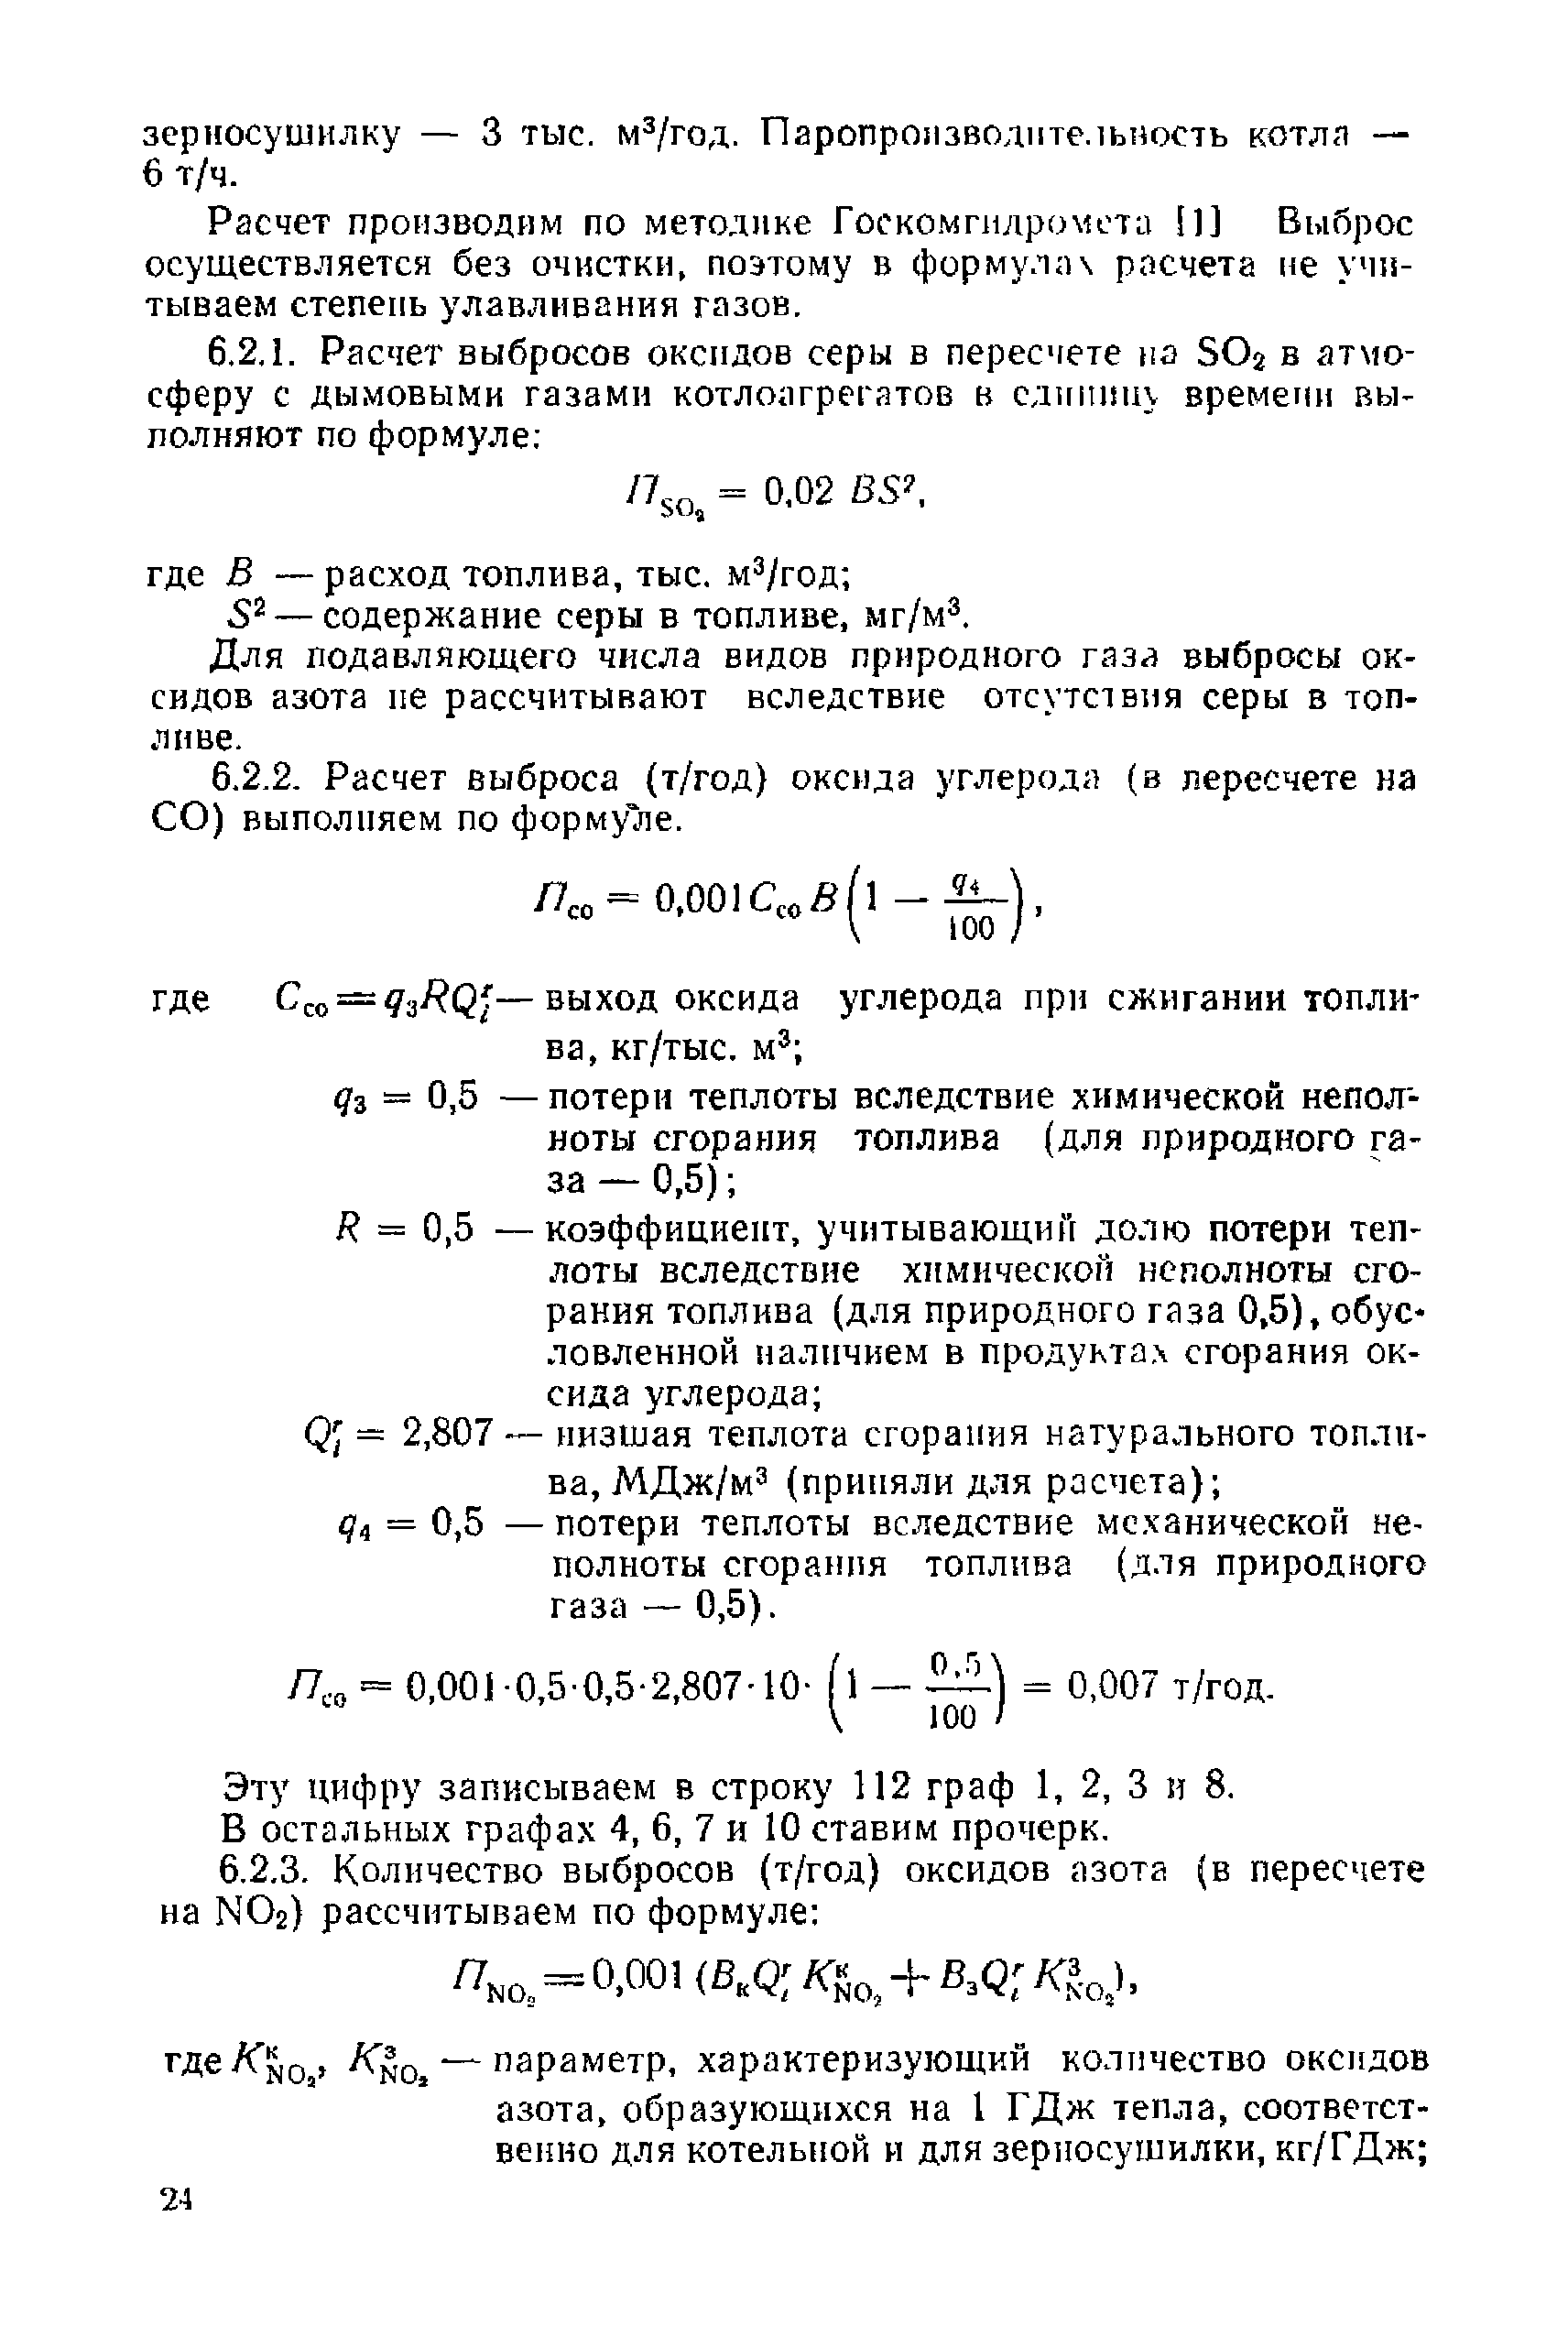 Инструкция 9-12/87